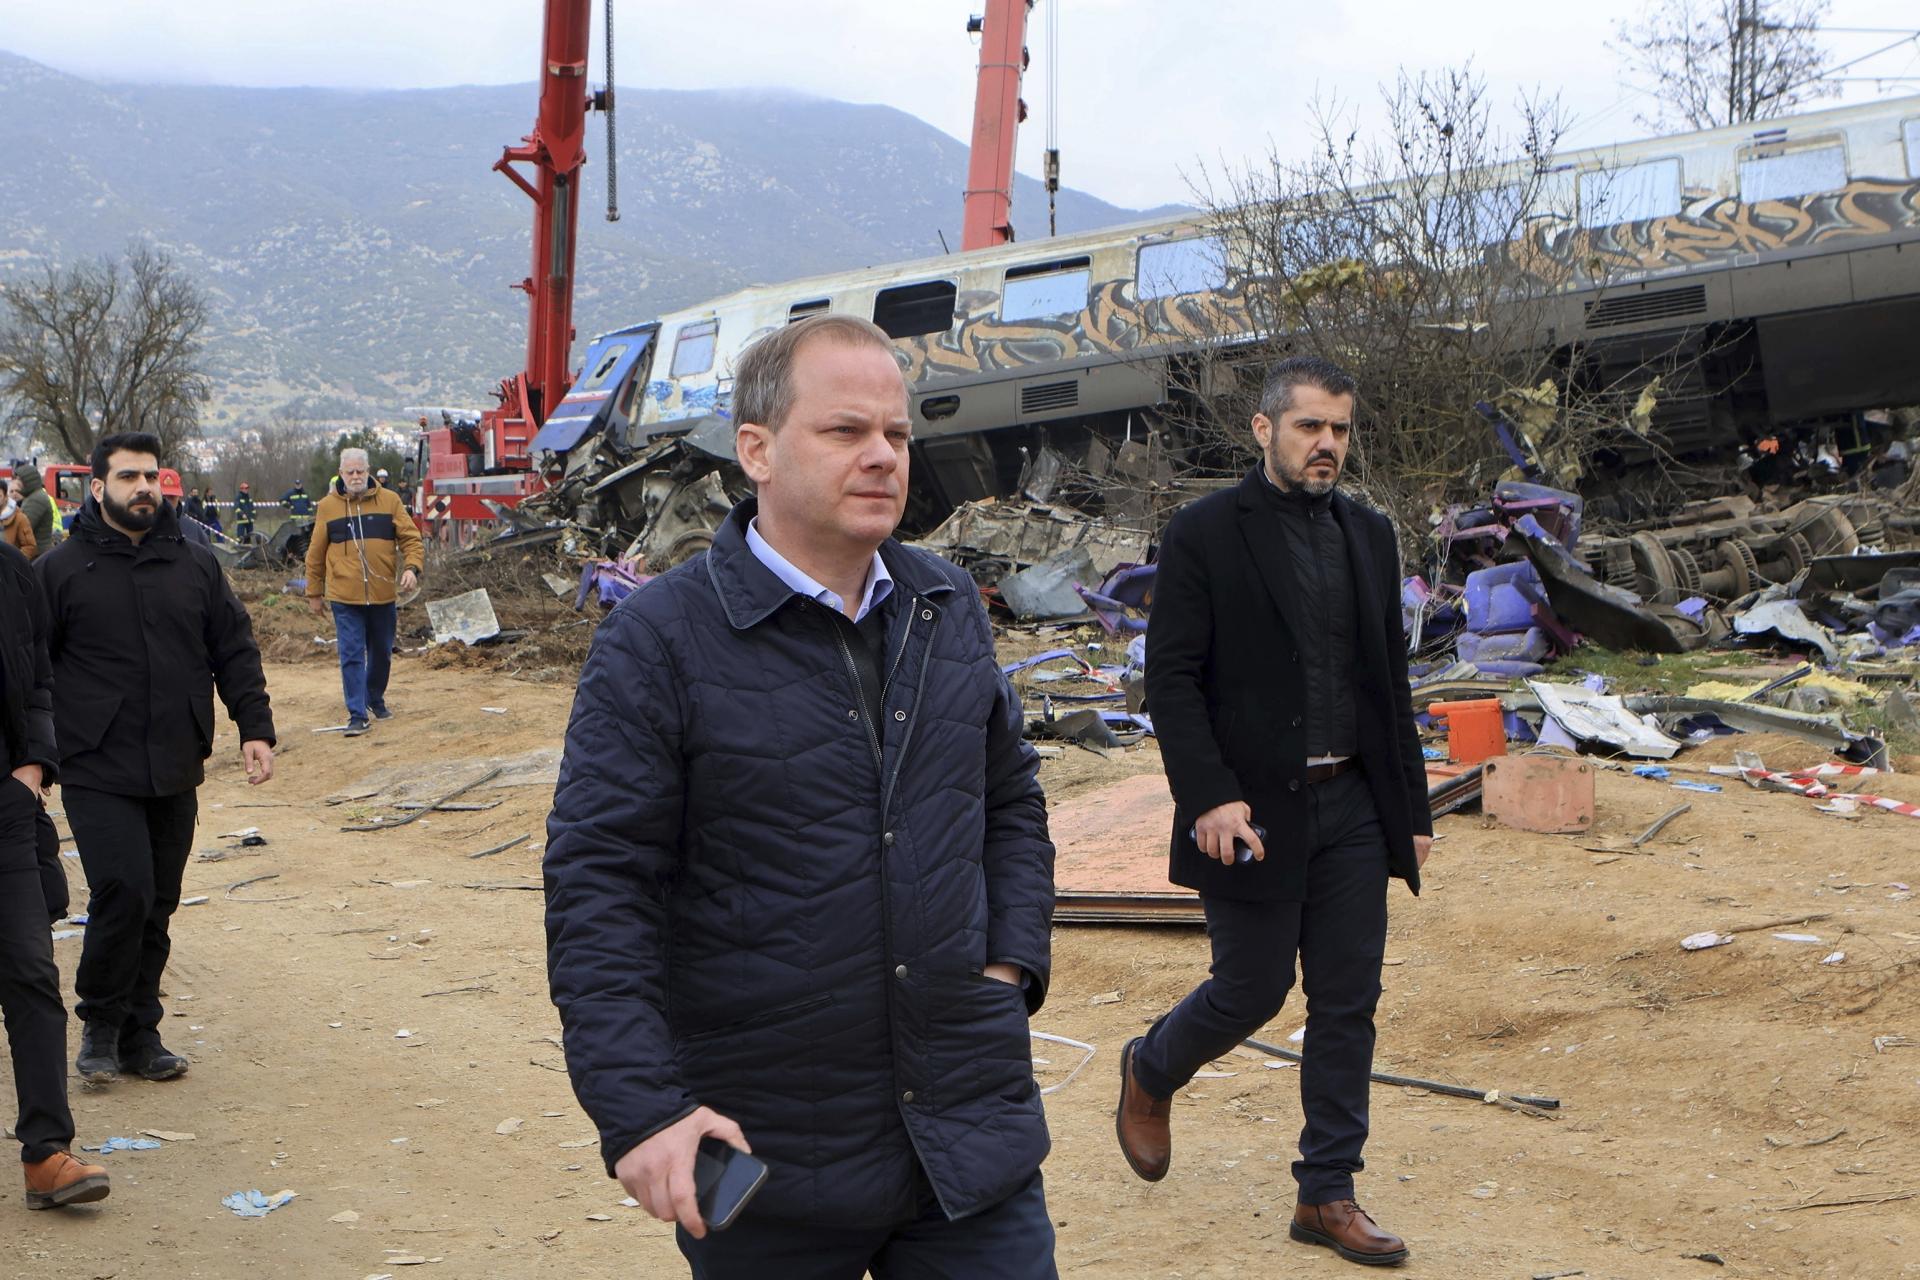 Zrážku vlakov spôsobil tragický ľudský omyl, tvrdí grécky premiér. Pri nehode zahynulo 38 ľudí